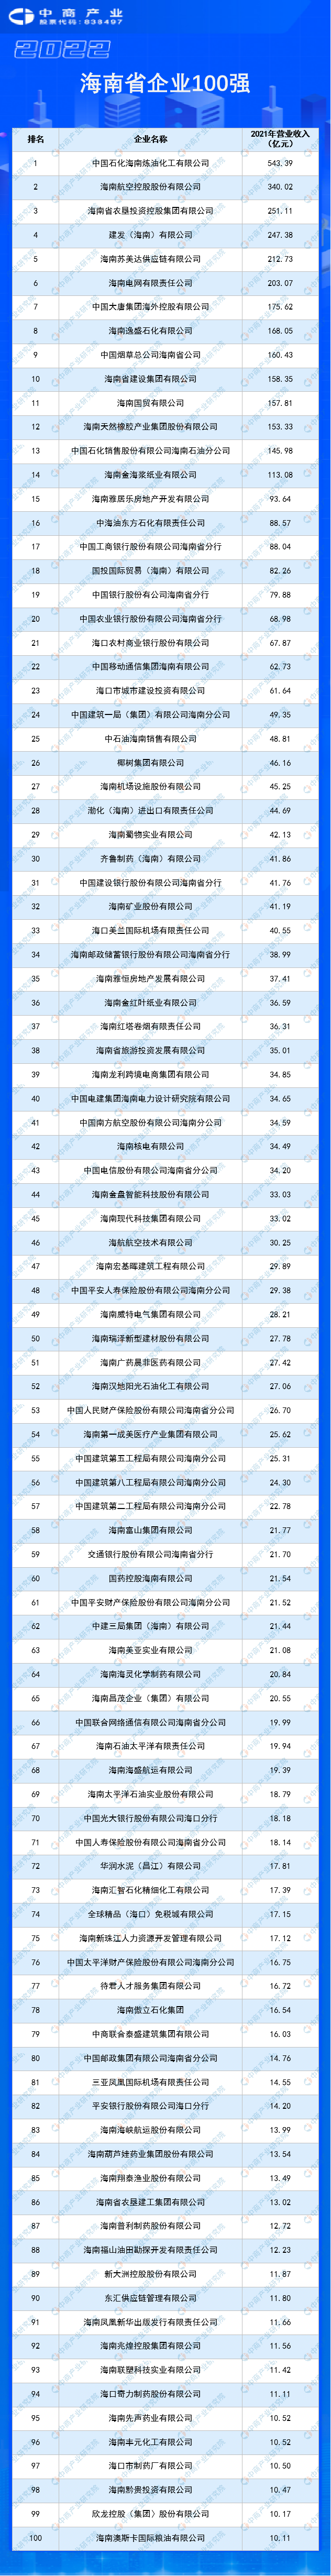 　　资料来源：海南省企业联合会、海南省企业家协会、中商产业研究院整理